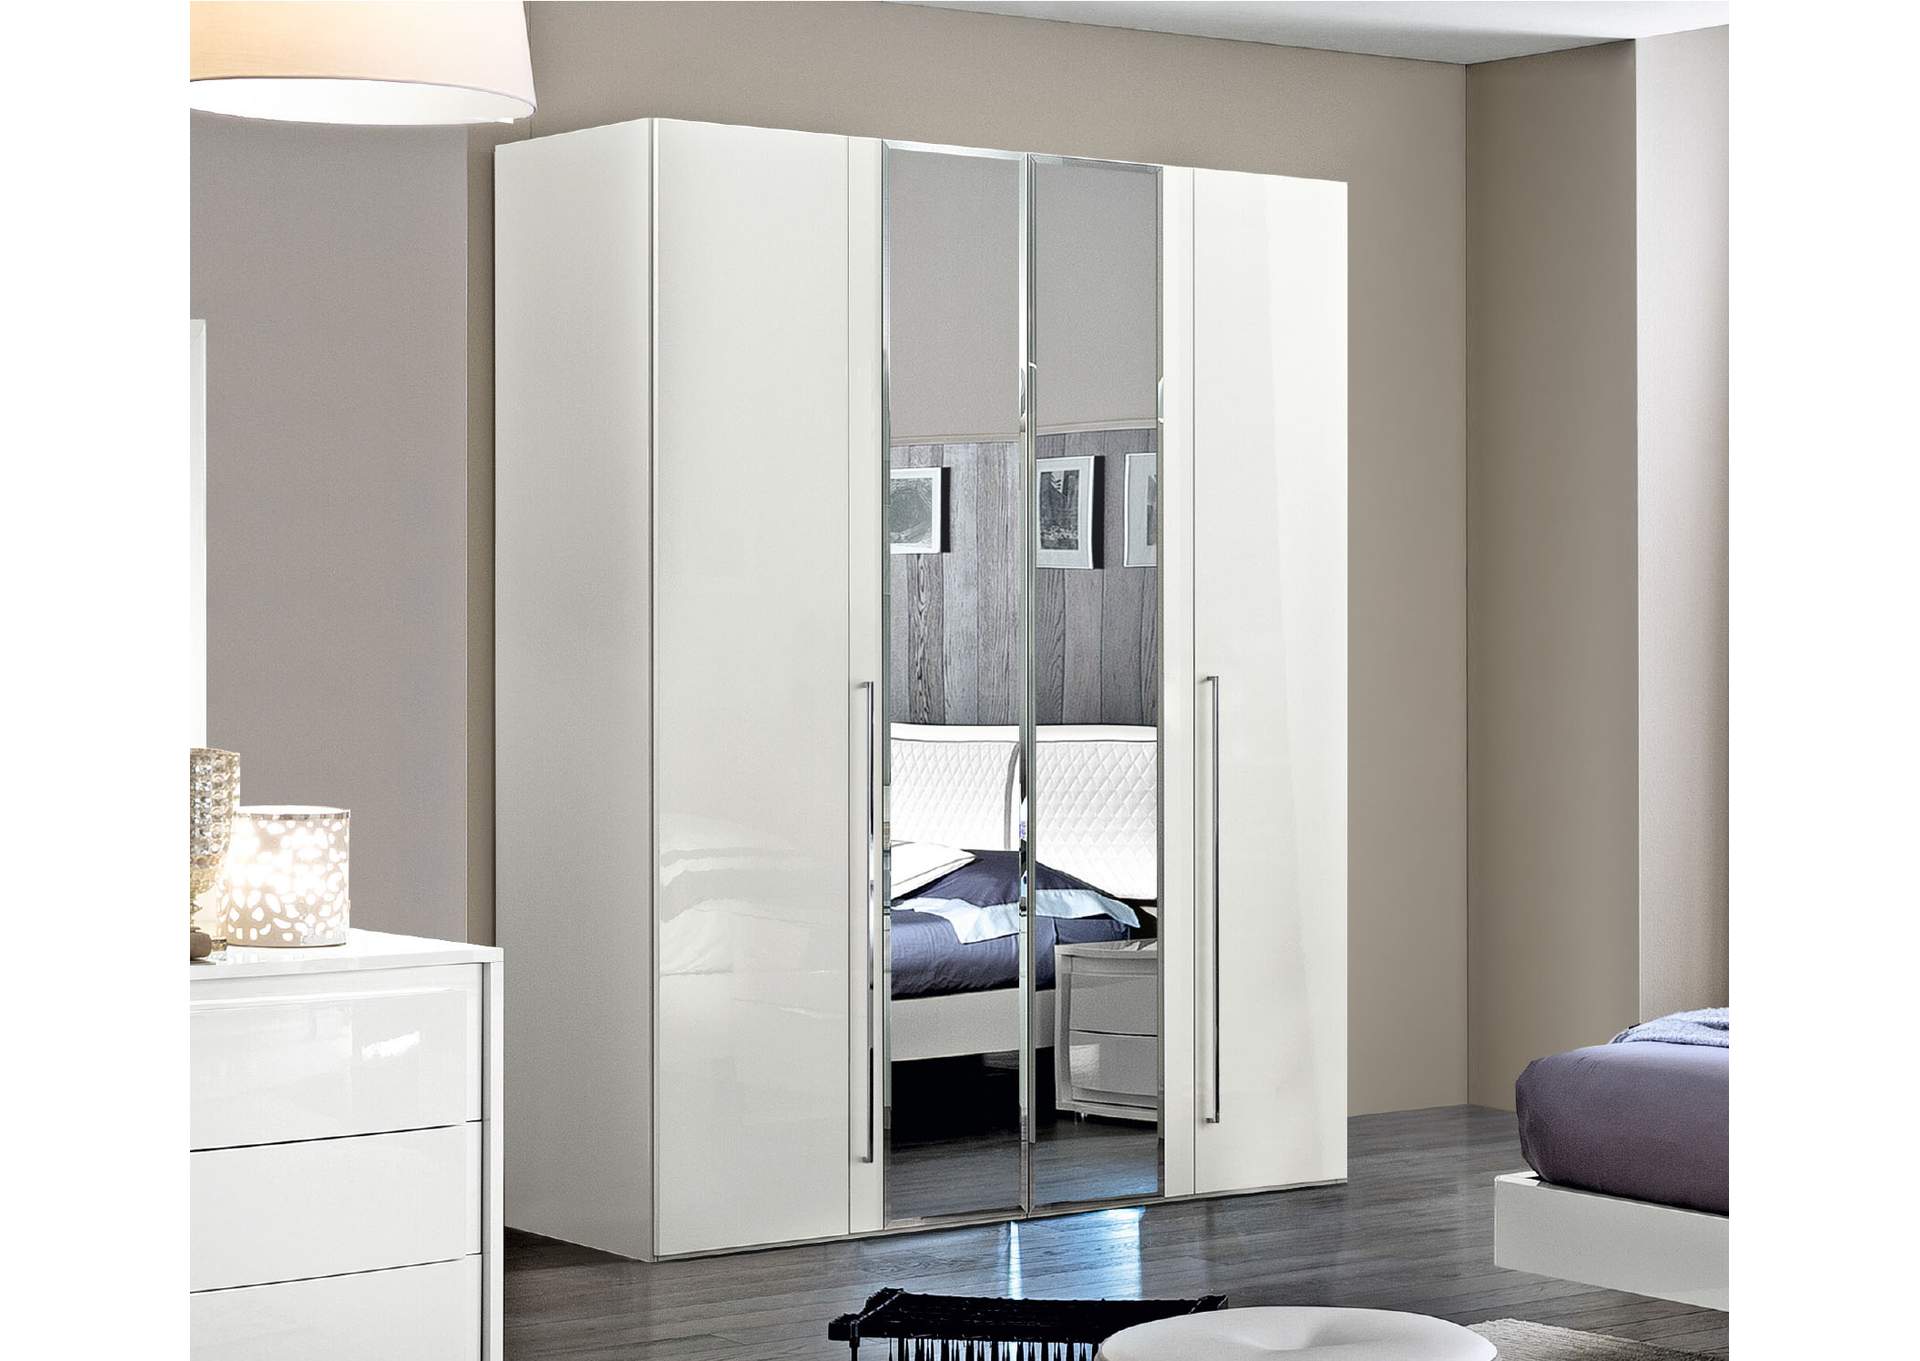 Onda 4 Door Wardrobe with 2 Mirror Doors,ESF Wholesale Furniture